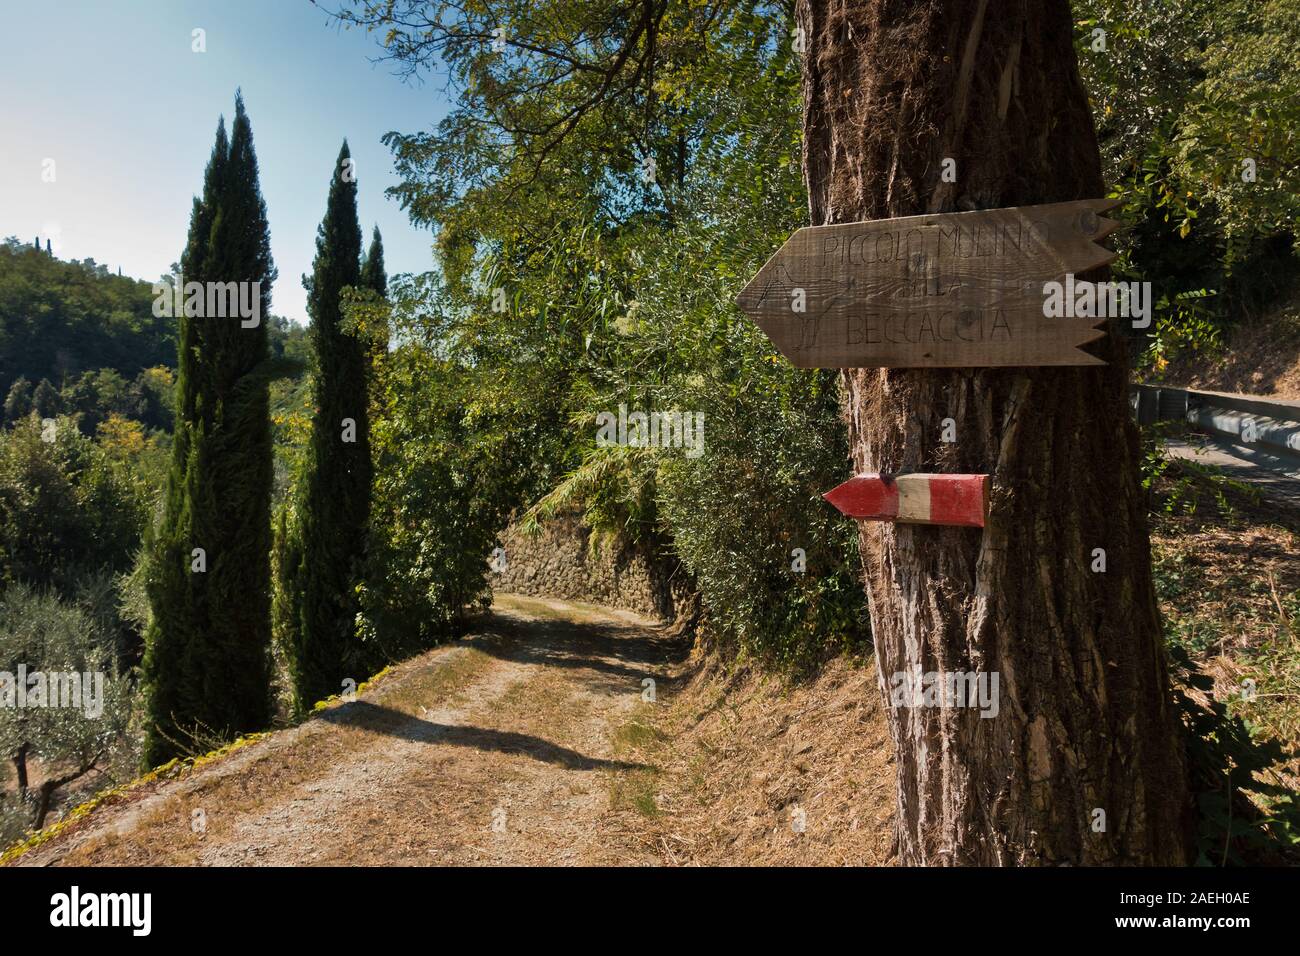 Jonction avec un grand arbre au sentier de randonnée sur un chemin de gravier retour entouré de cyprès, près de Vinci, Toscane, Italie Banque D'Images